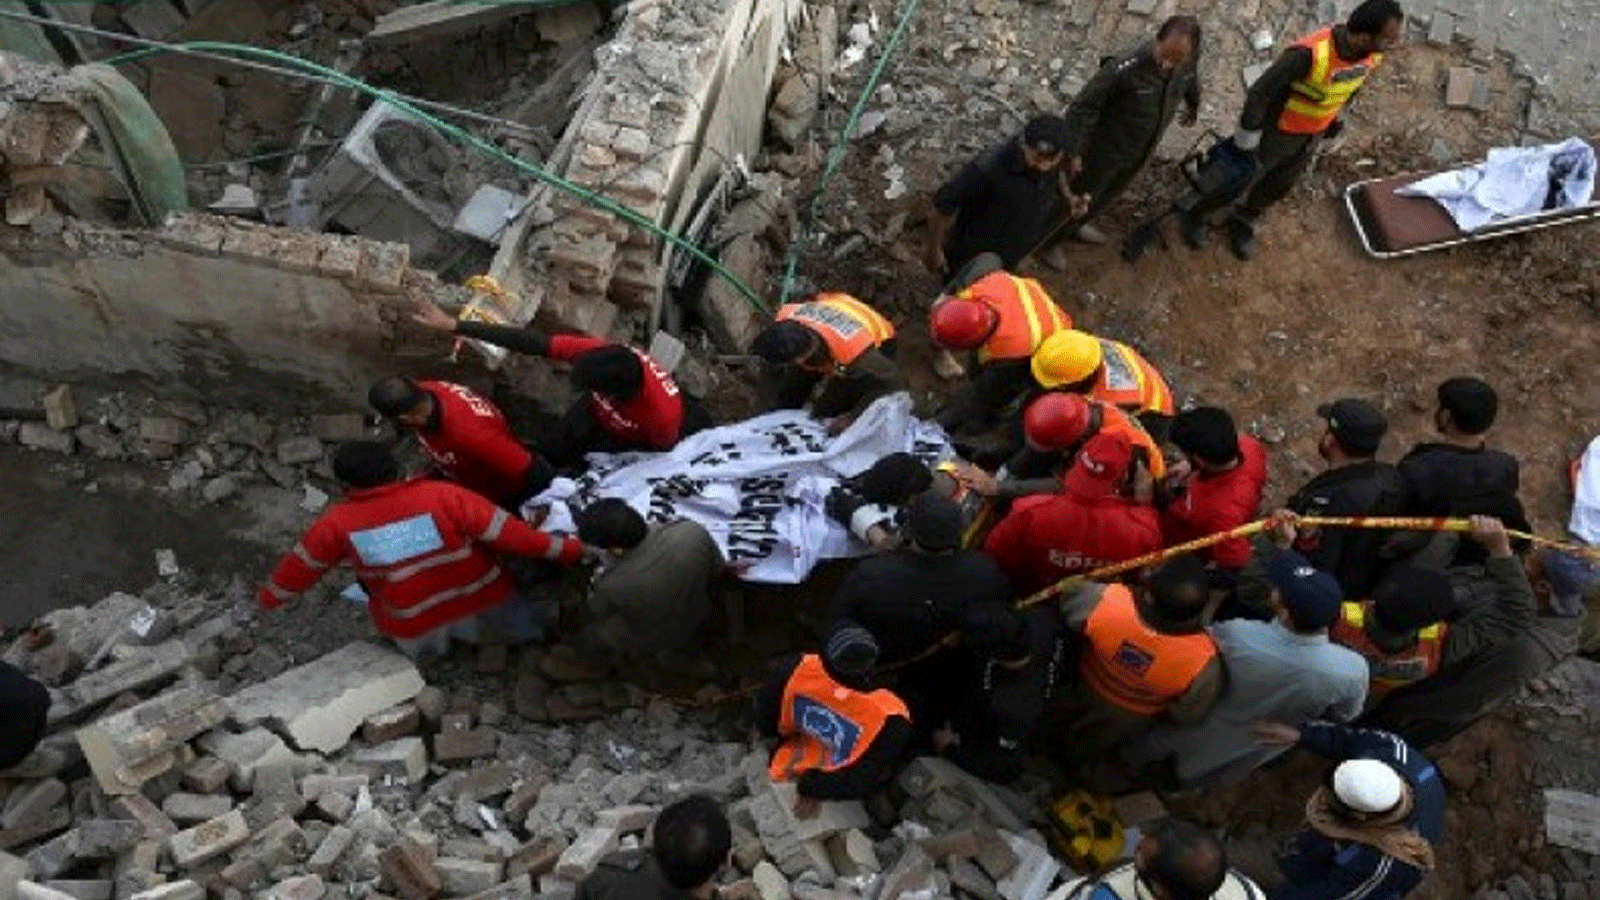 عمال الإنقاذ يحملون رفات ضحايا الانفجار من حطام مسجد متضرر بعد انفجار داخل مقر الشرطة في بيشاور في 30 كانون الثاني\يناير 2023